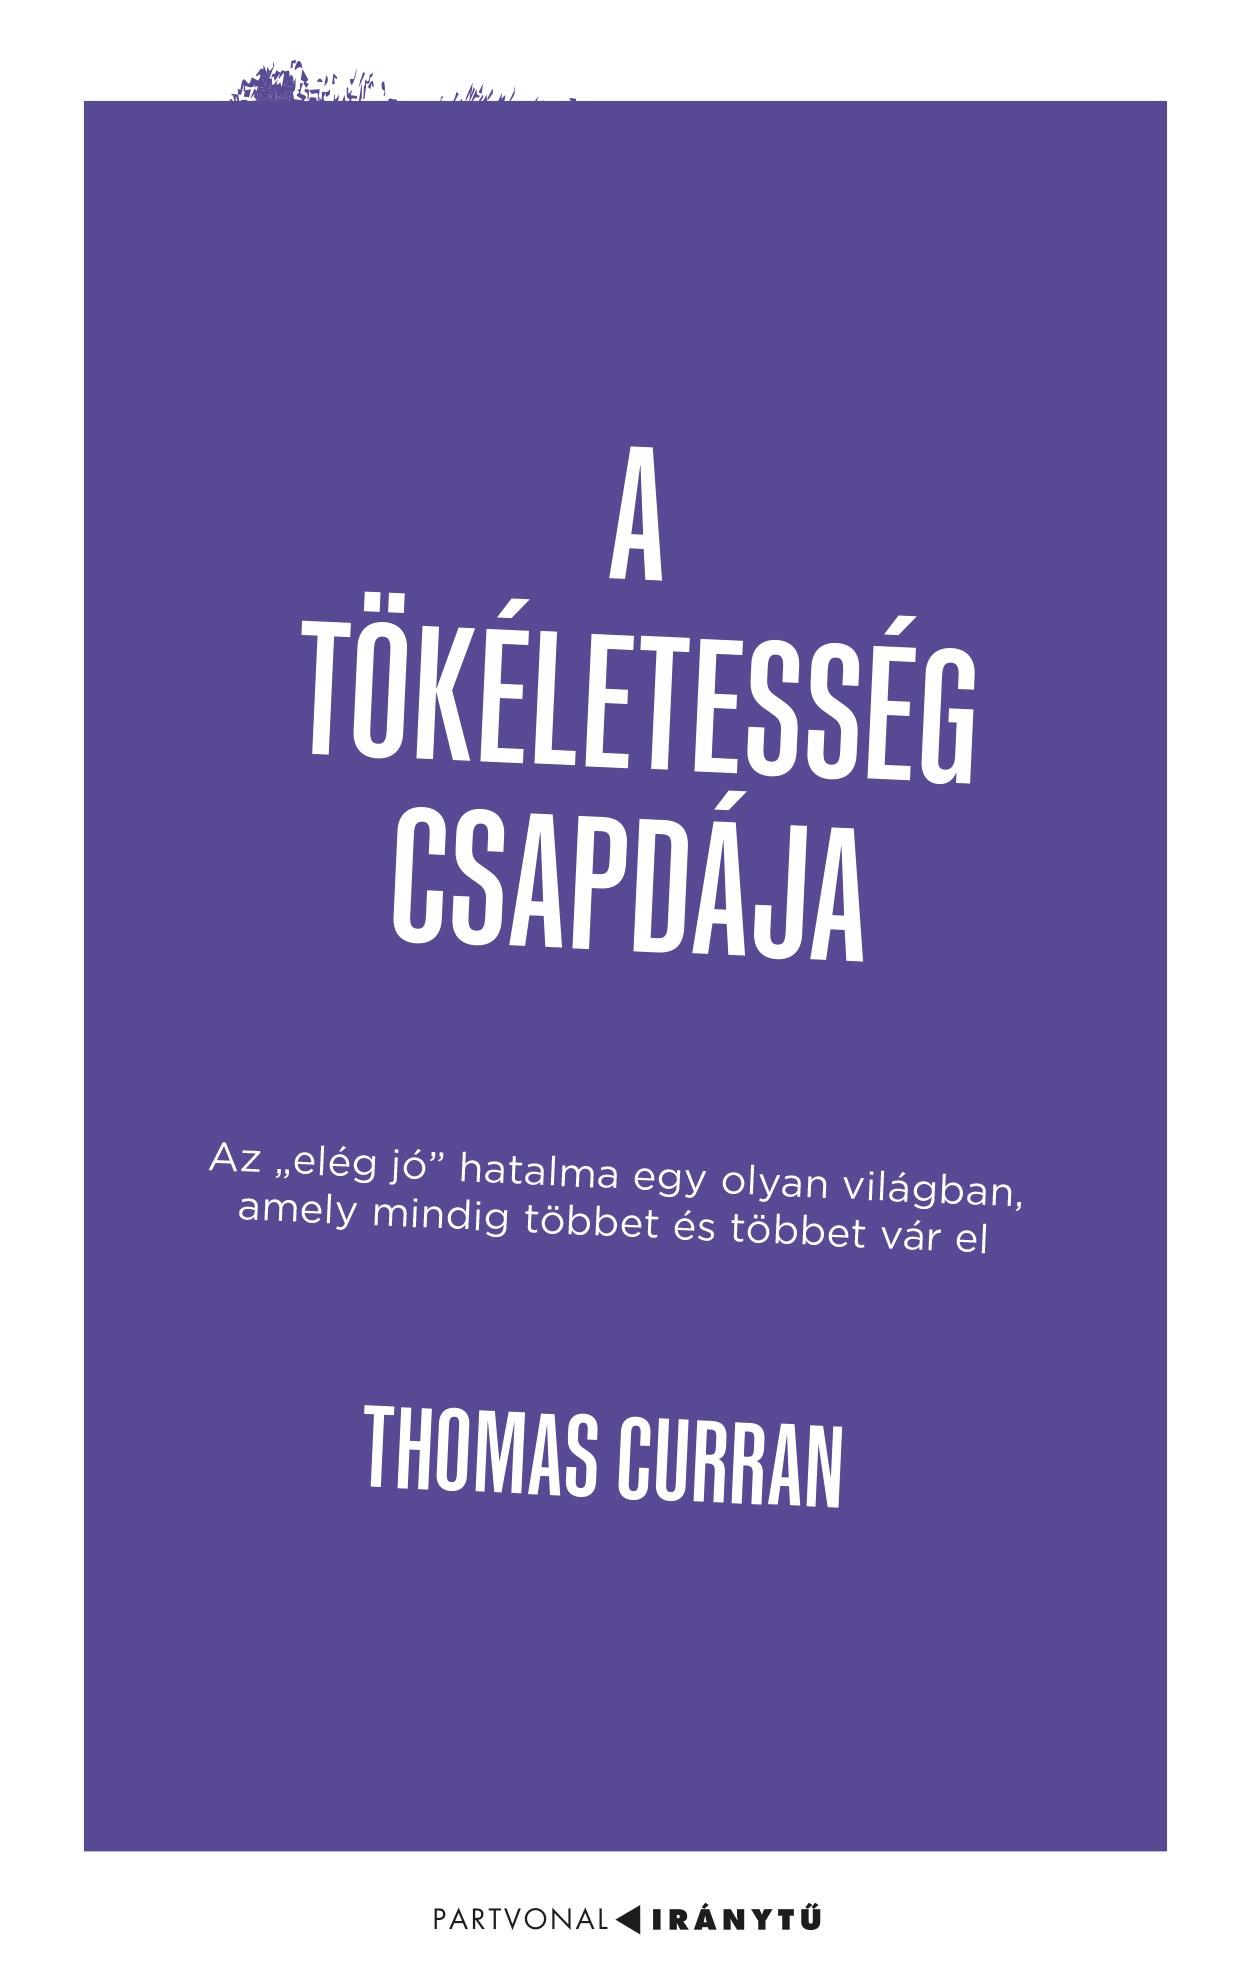 Thomas Curran - A tökéletesség csapdája - Az ,,elég jó